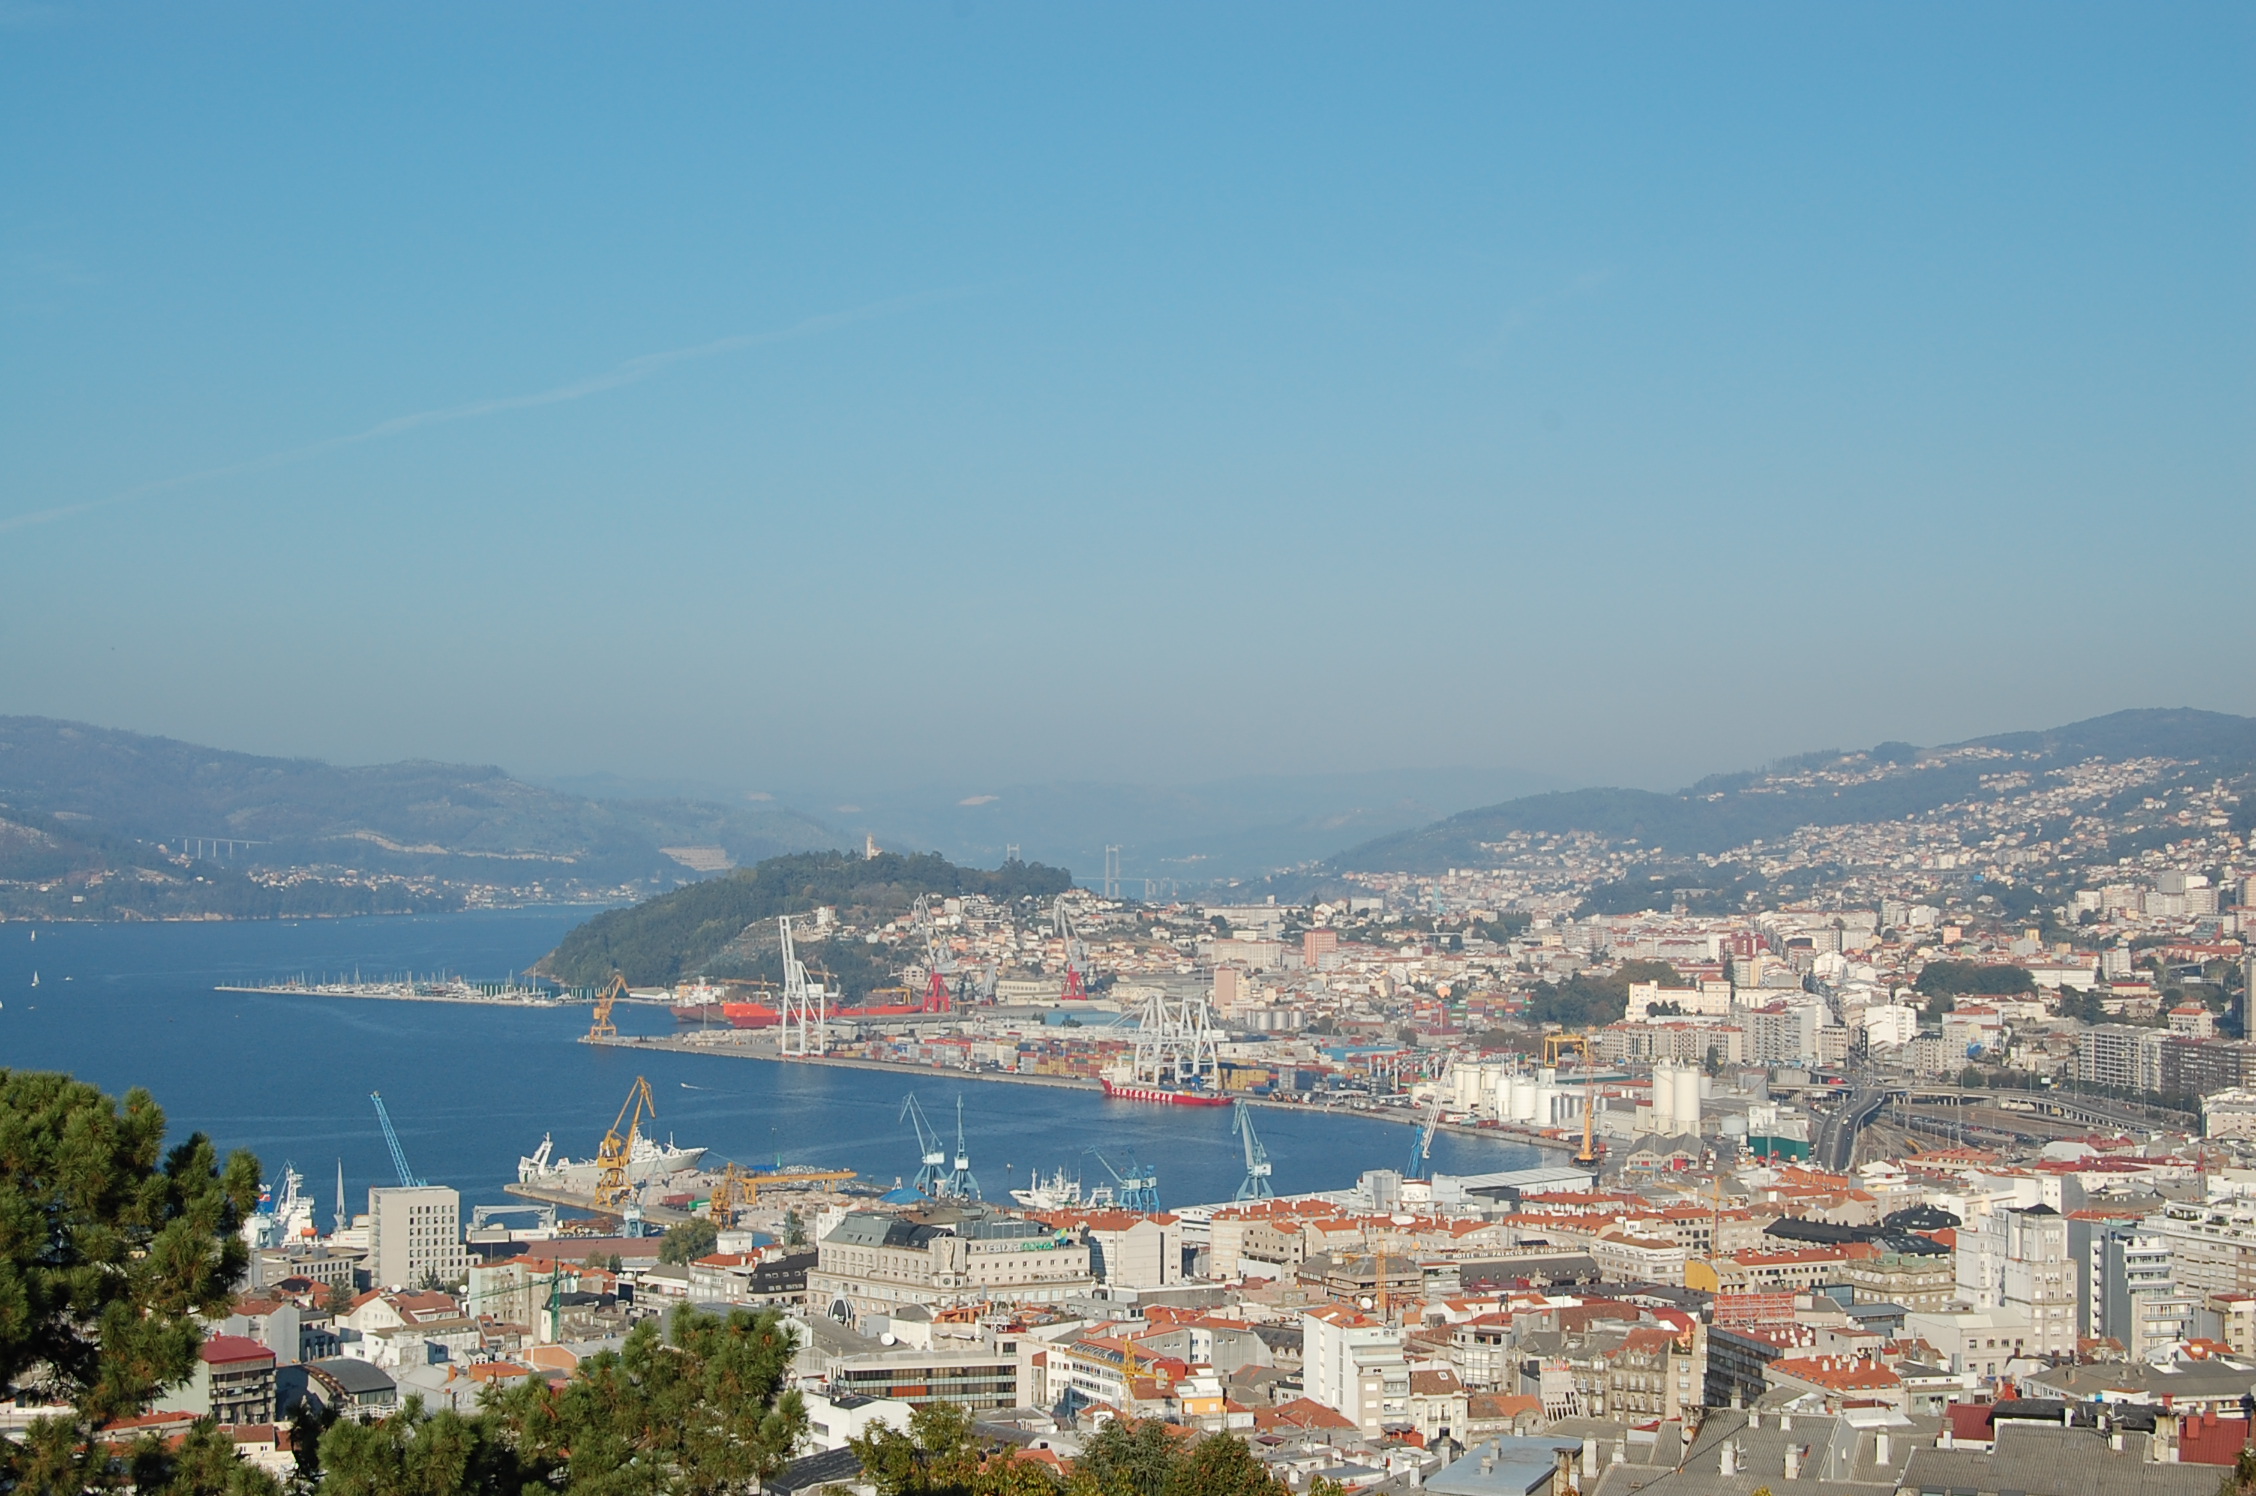 Soleado Controversia excepto por Puerto de Vigo - Wikipedia, la enciclopedia libre